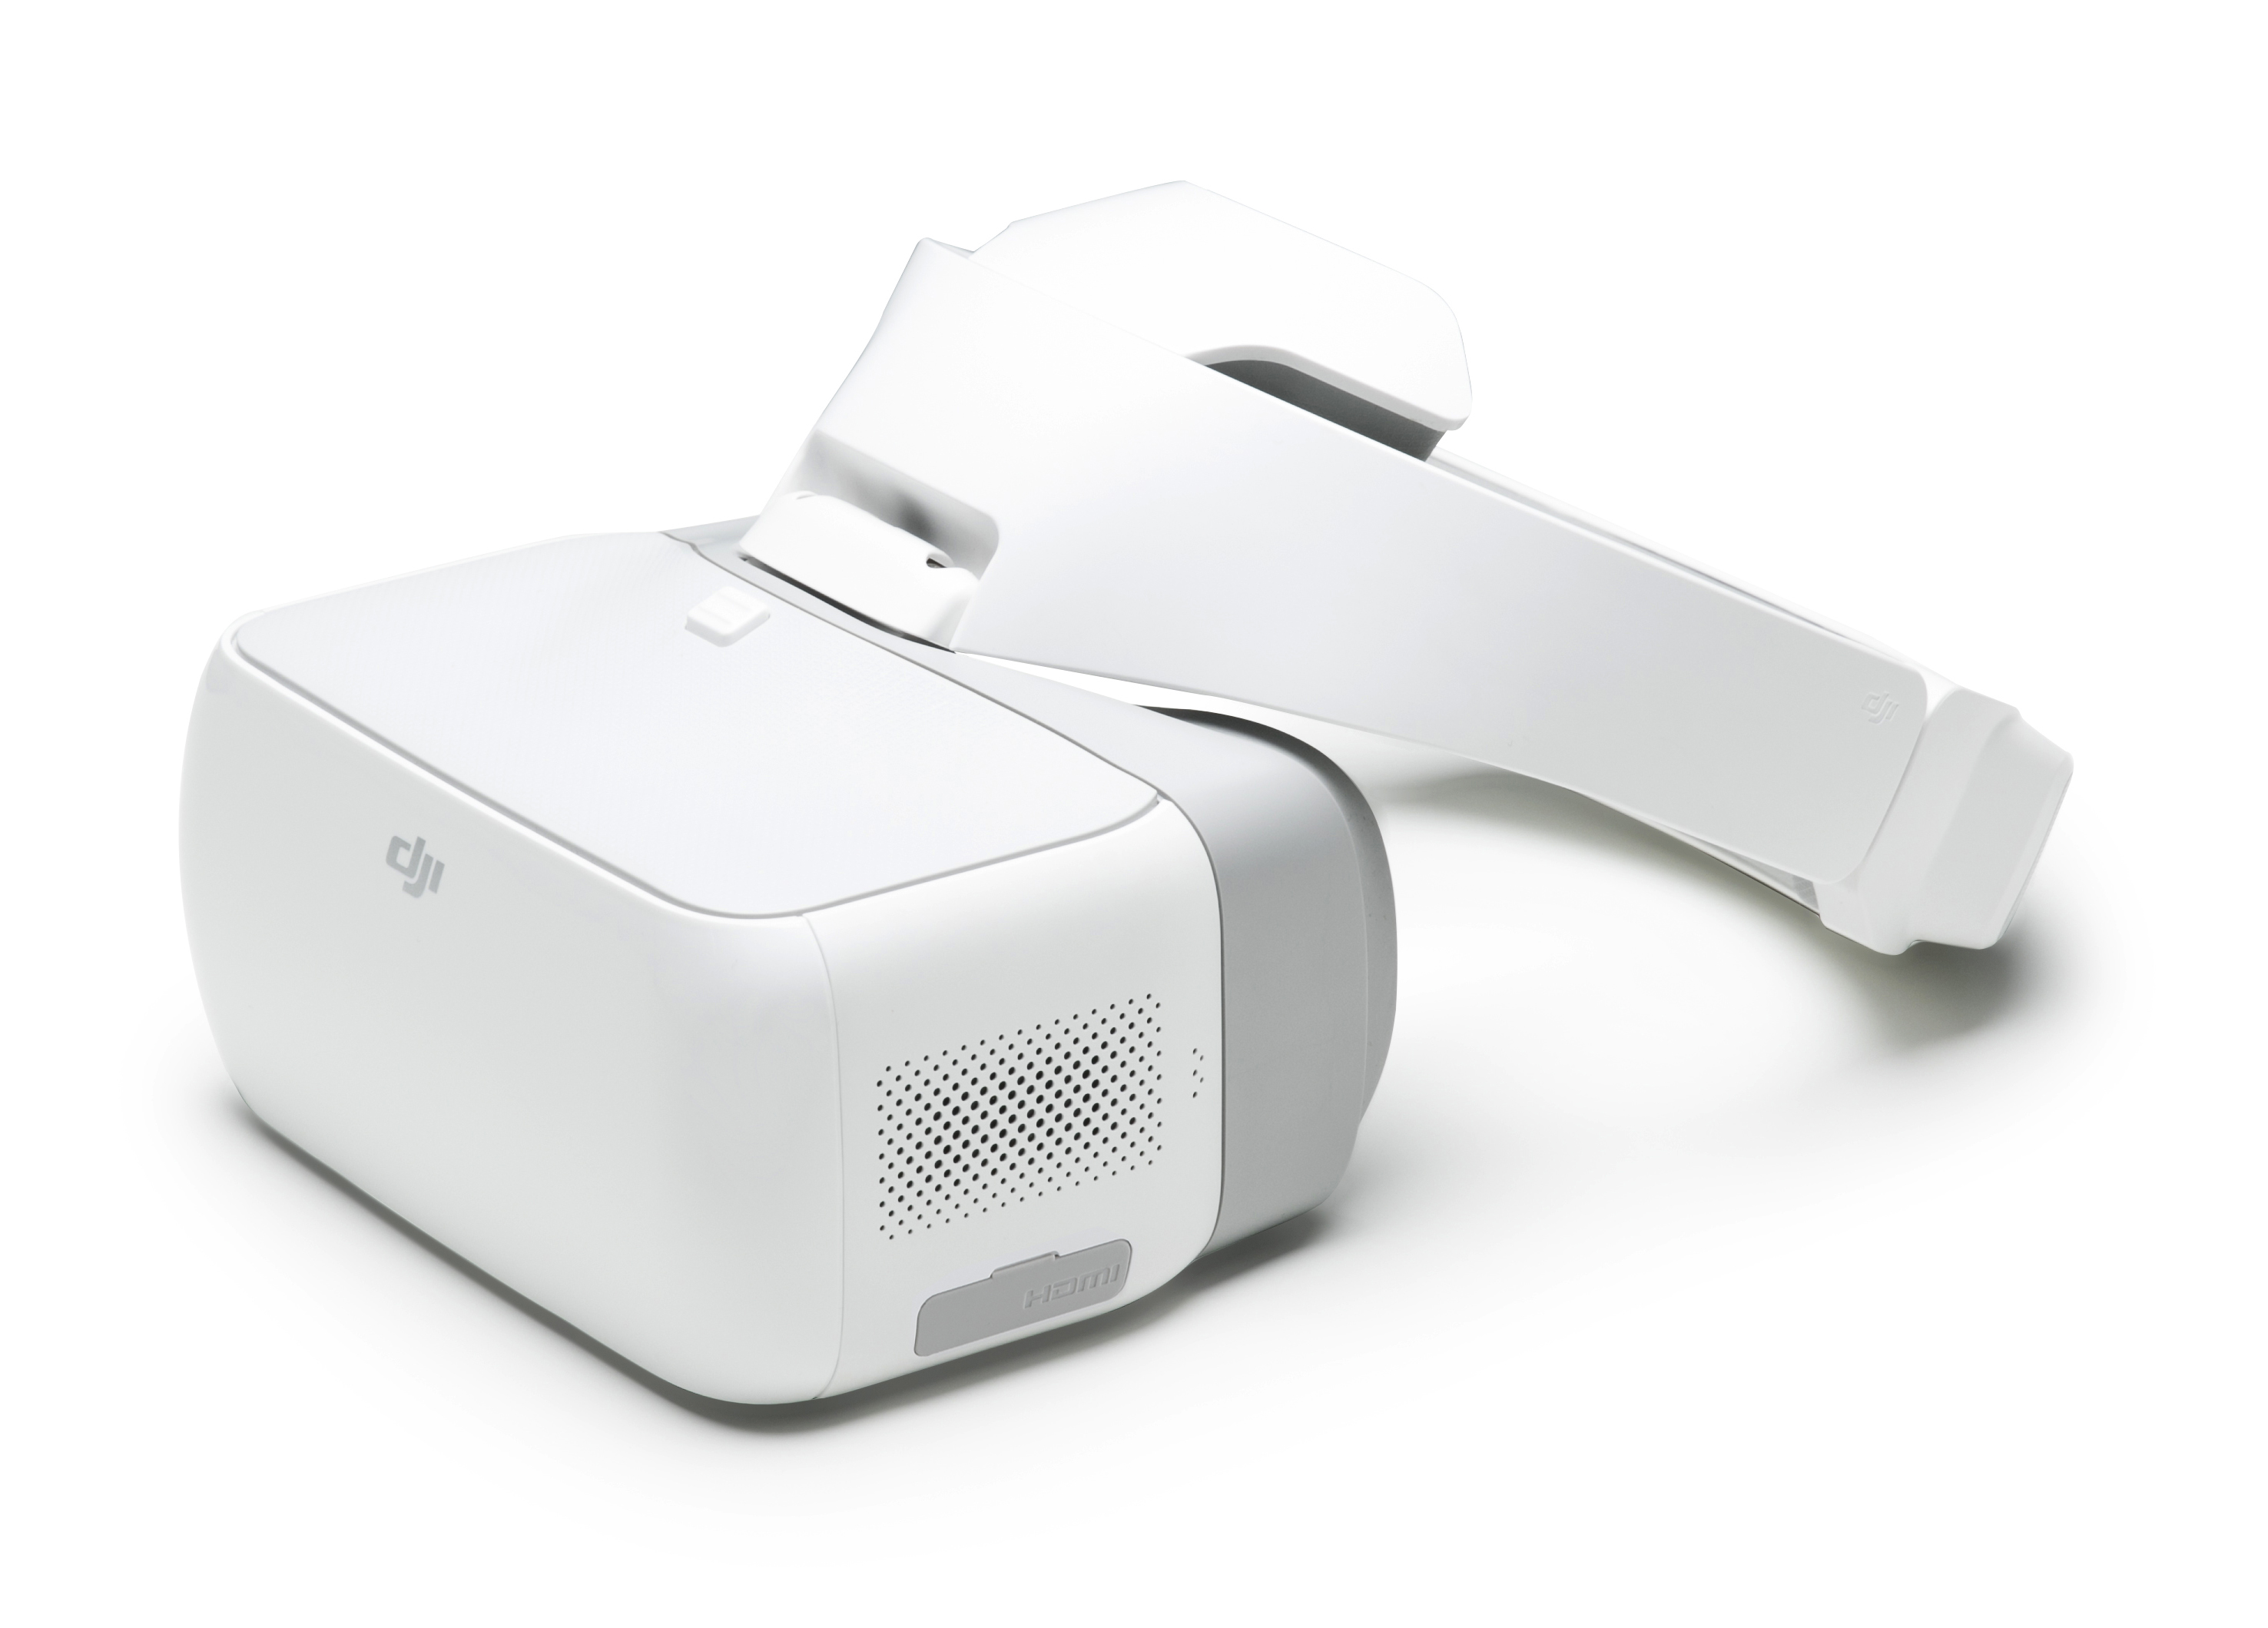 Conheça “DJI Goggles” o óculos VR que permitem pilotar drones sem usar as mãos